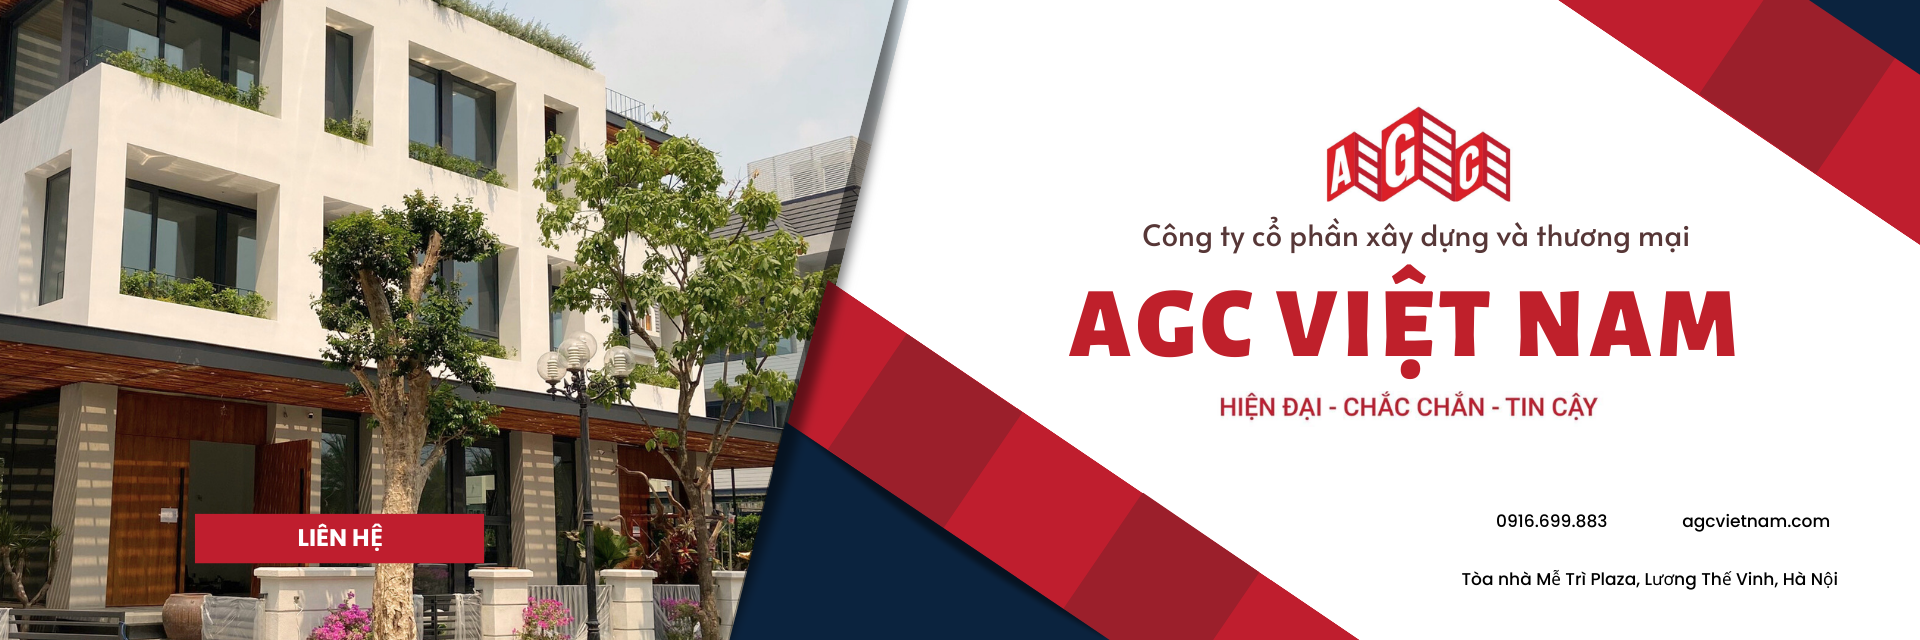 Công ty cổ phần Xây Dựng và Thương Mại AGC Việt Nam